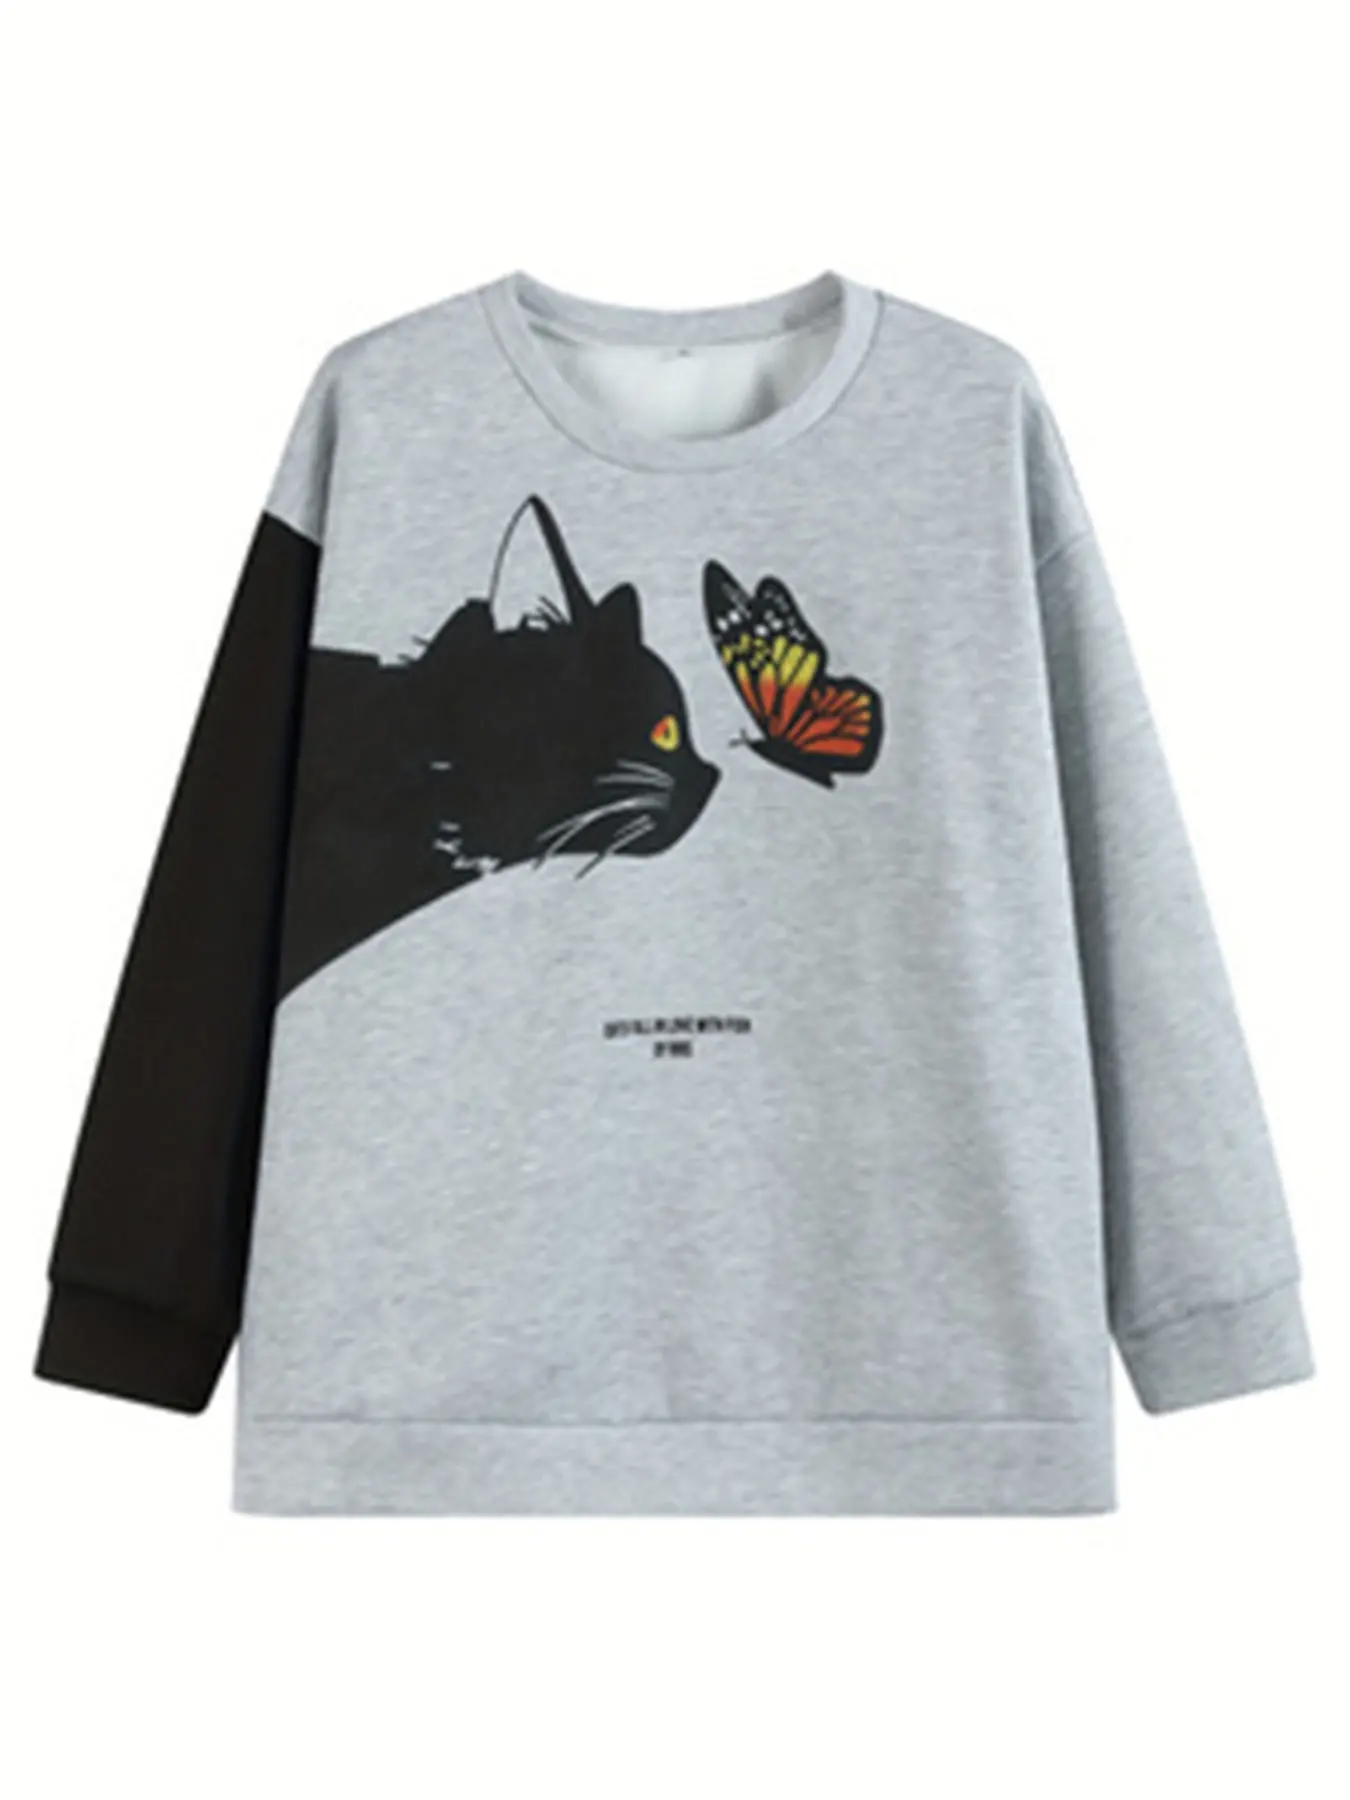 Kaus kasual ukuran Plus, baju Sweatshirt kasual wanita, ukuran Plus huruf & kucing & kupu-kupu, kaus lengan panjang, leher bulat